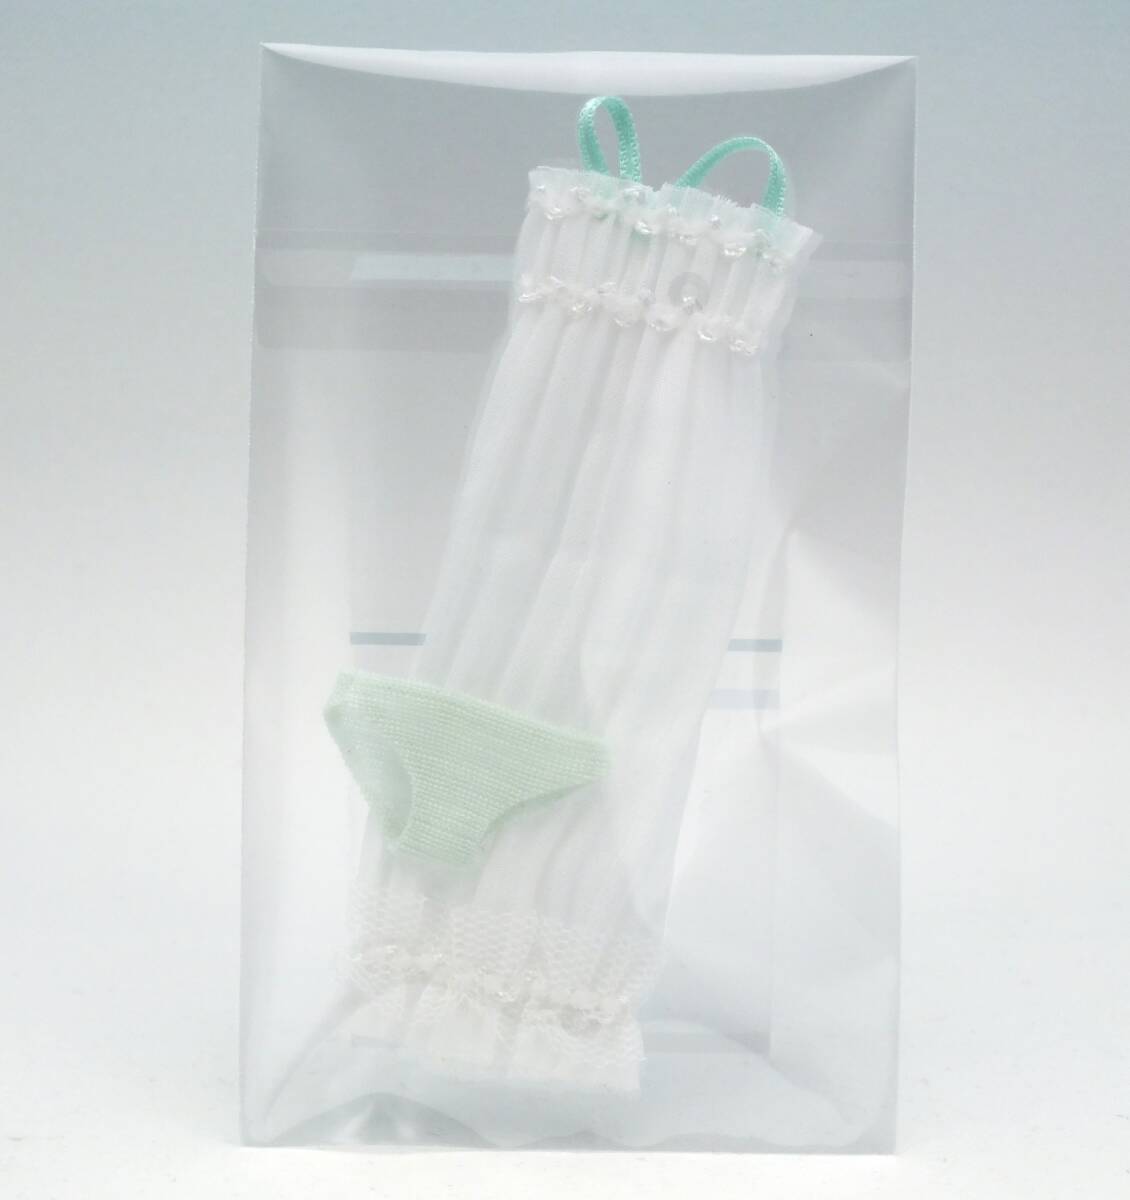 【神姫工房】Relux Style: ナイティセット Frilly negligee "PG" メガミデバイス用 1/12 ドール服_出品のお品です